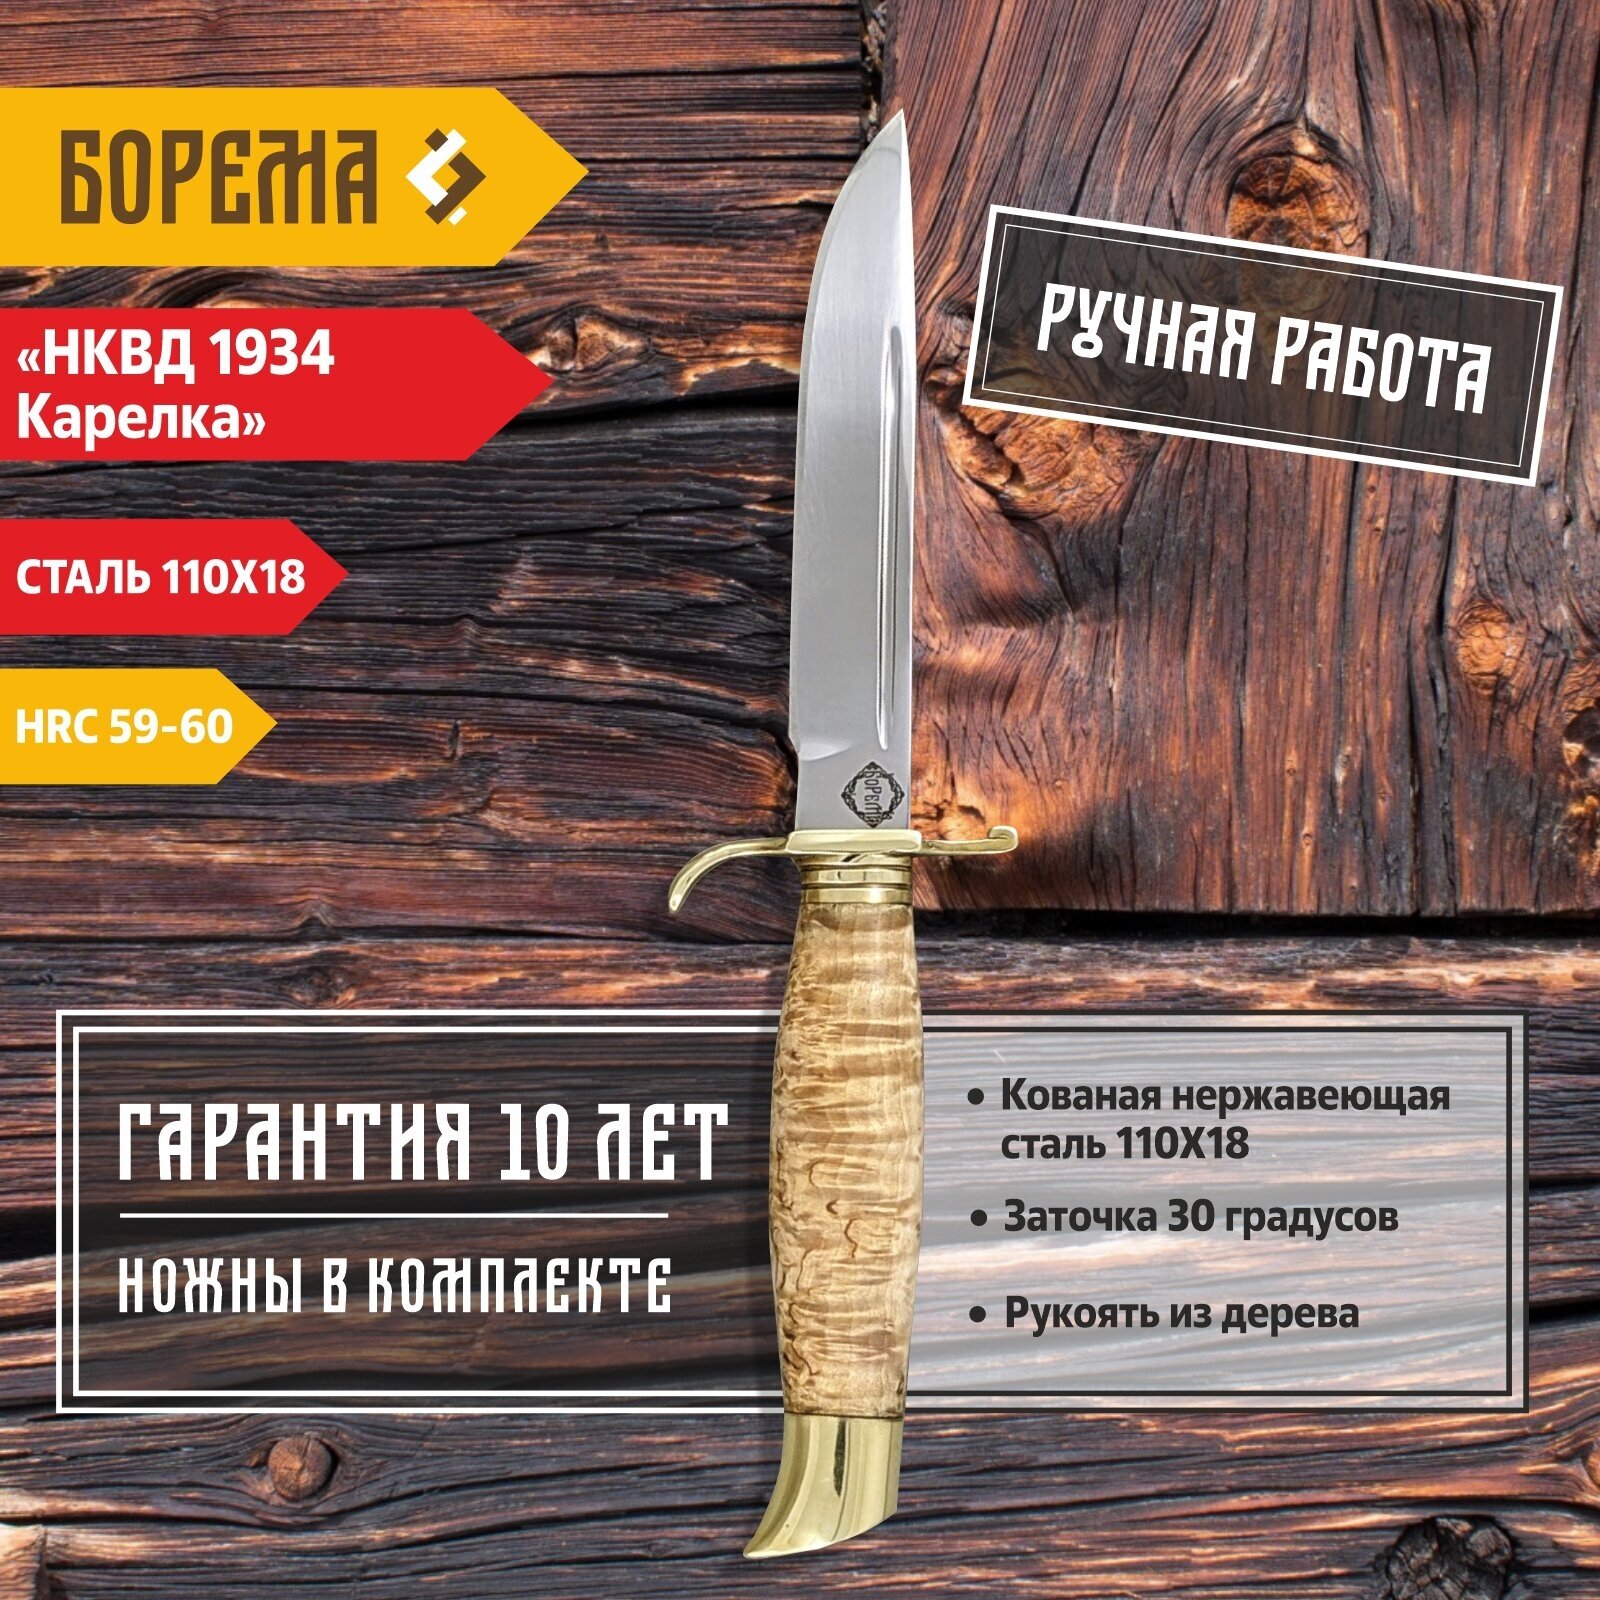 Охотничий нож фиксированный Борема "Финка НКВД 1934 Карелка", длина лезвия 13 см, кованая сталь 110Х18, нож туристический, нож ручной работы